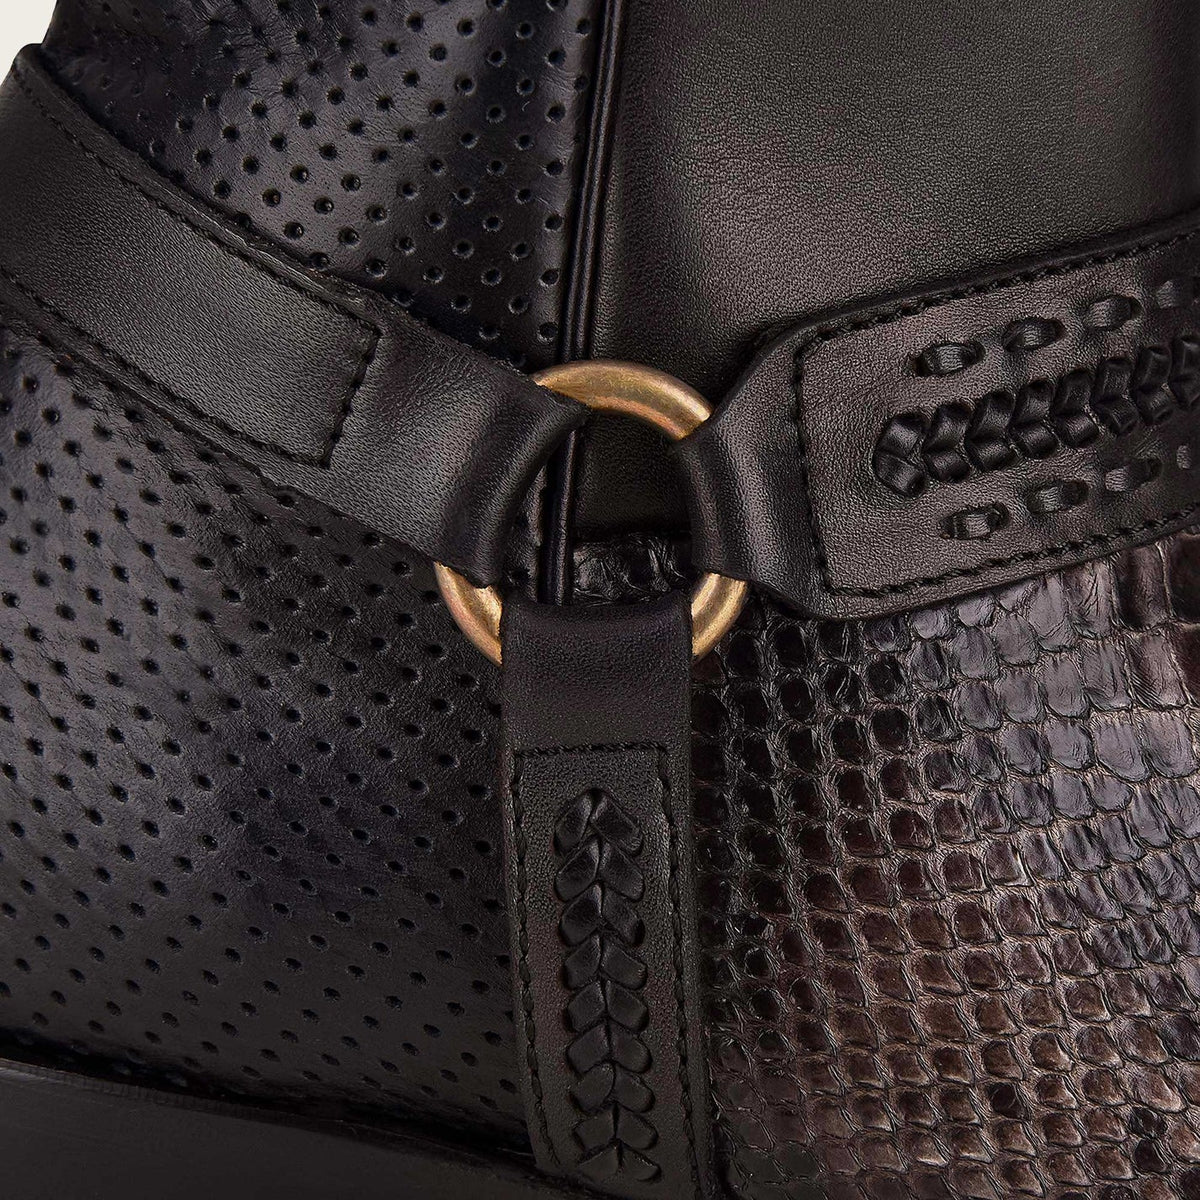 Cuadra Men's Gray Handwoven Leather Python Boots - Dudes Boutique